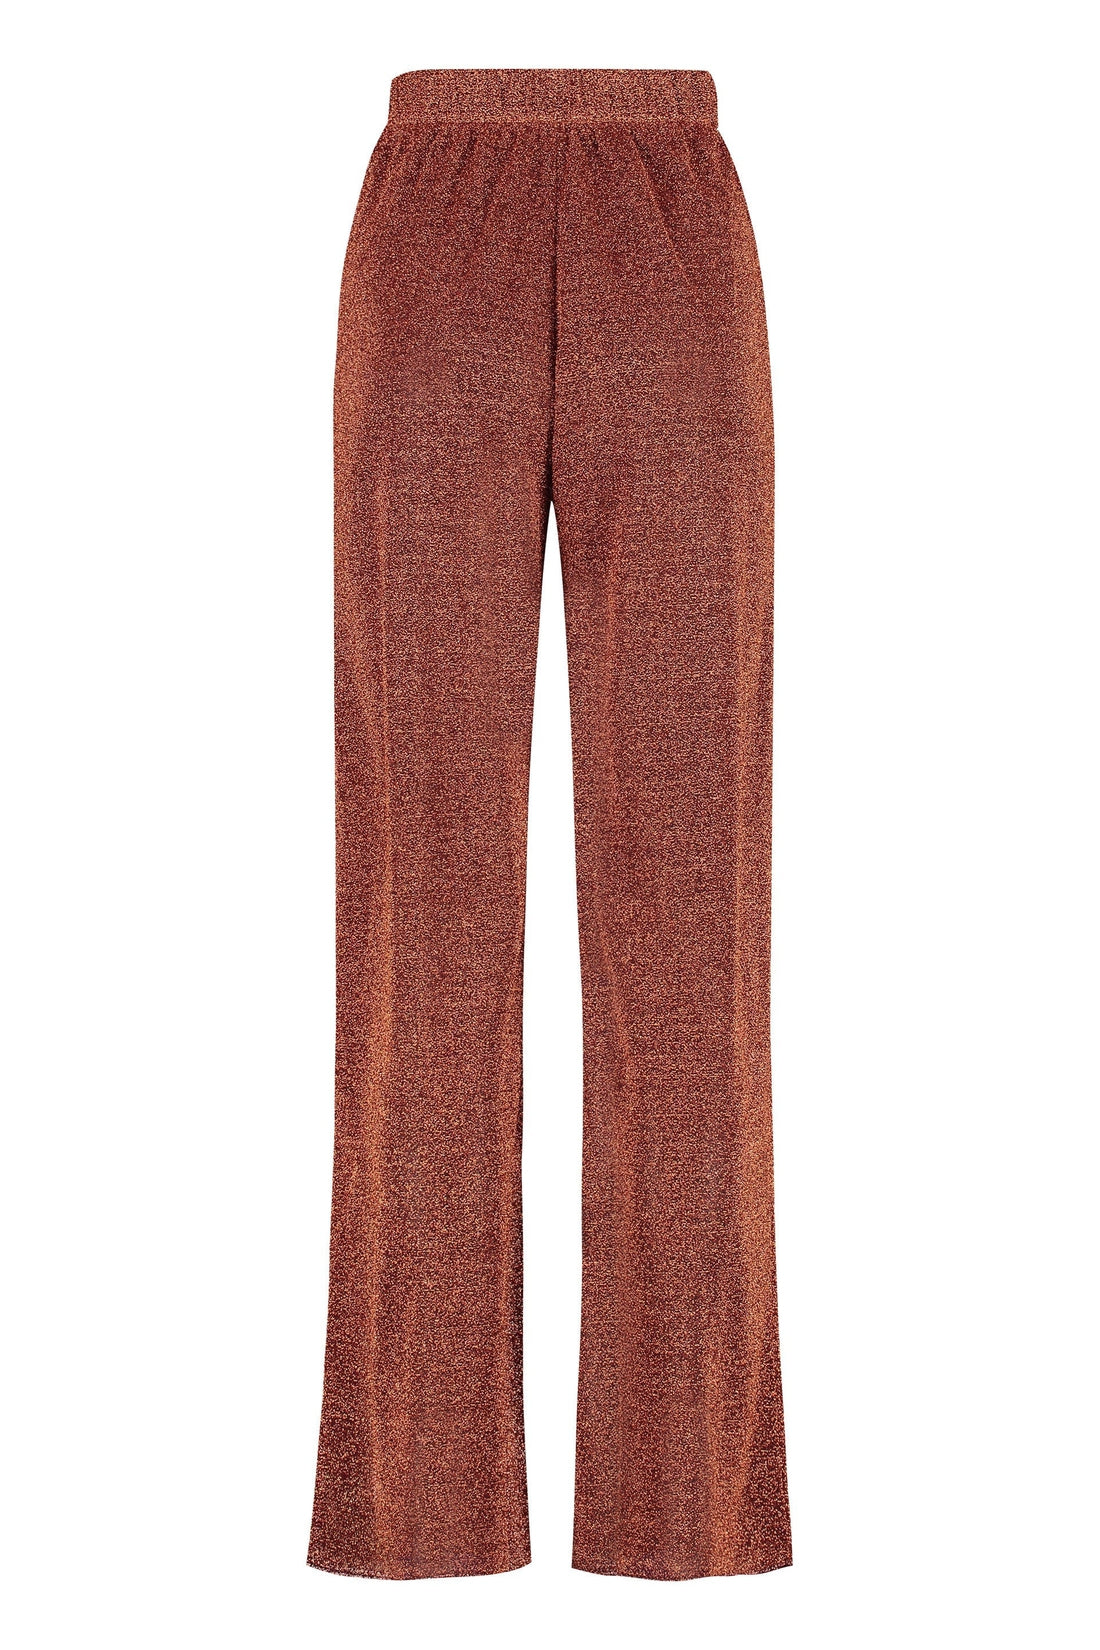 Oséree-OUTLET-SALE-Jersey trousers-ARCHIVIST